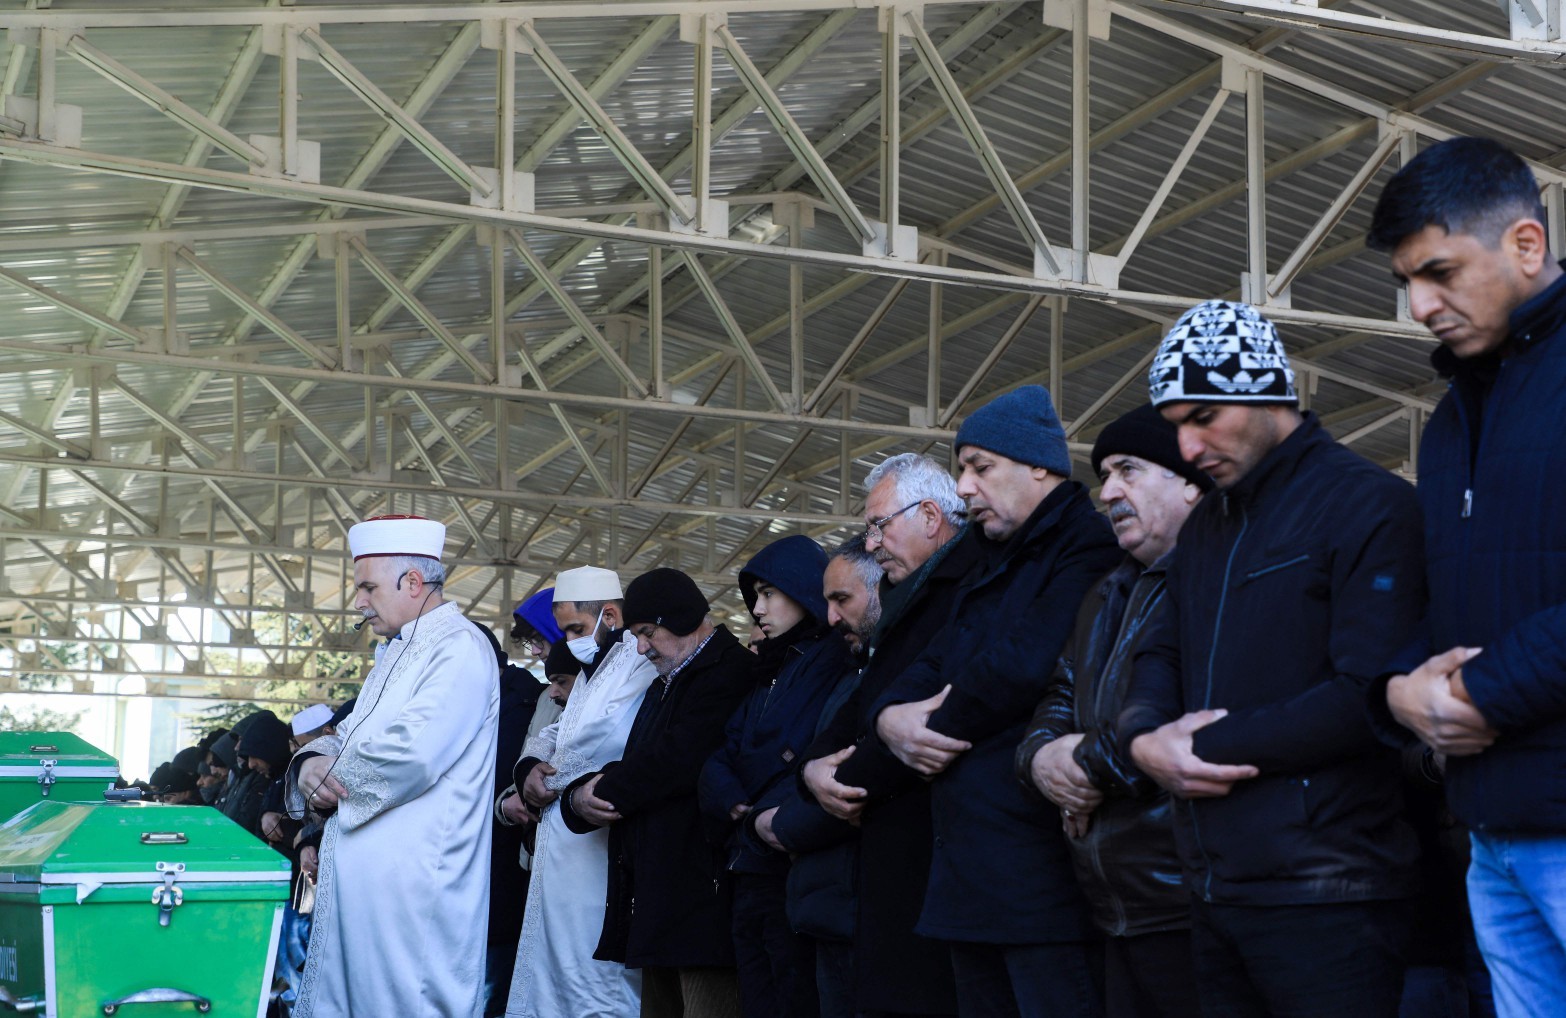 Parentes de vítimas participam de celebração antes do enterro de vítimas de terremoto na Turquia — Foto: Zein Al RIFAI / AFP